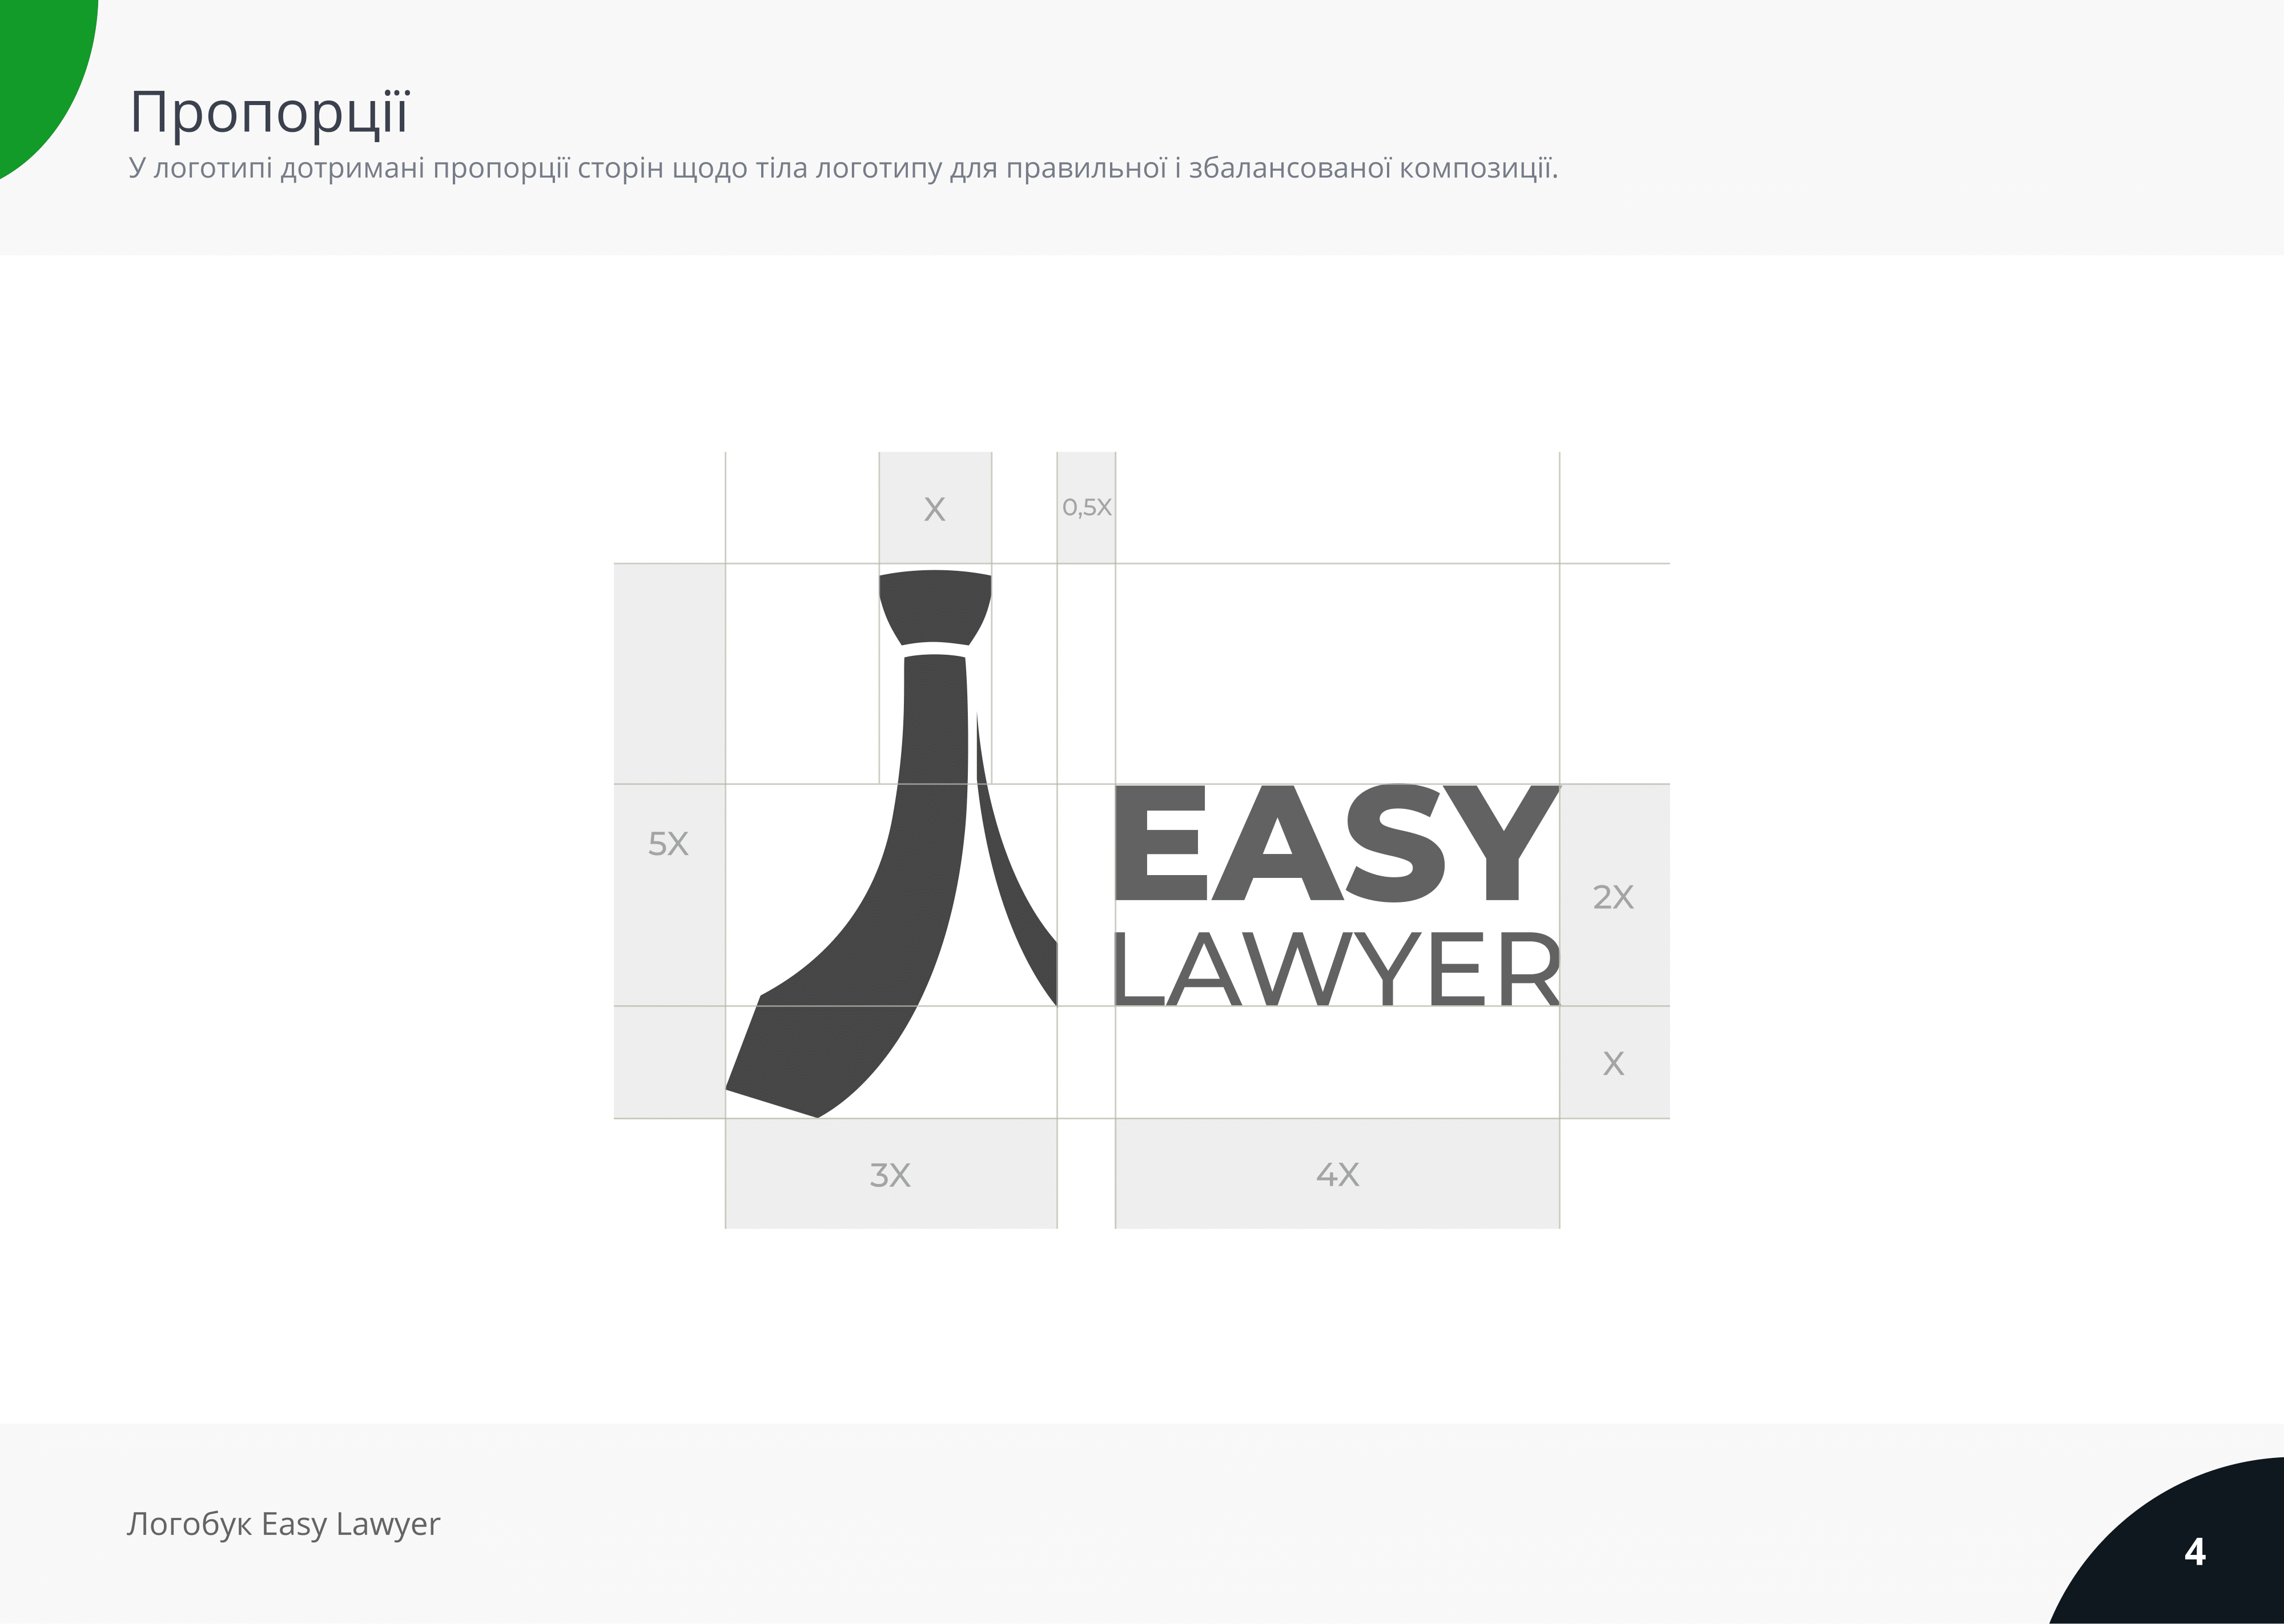 Easy Lawyer (Logobook)-04